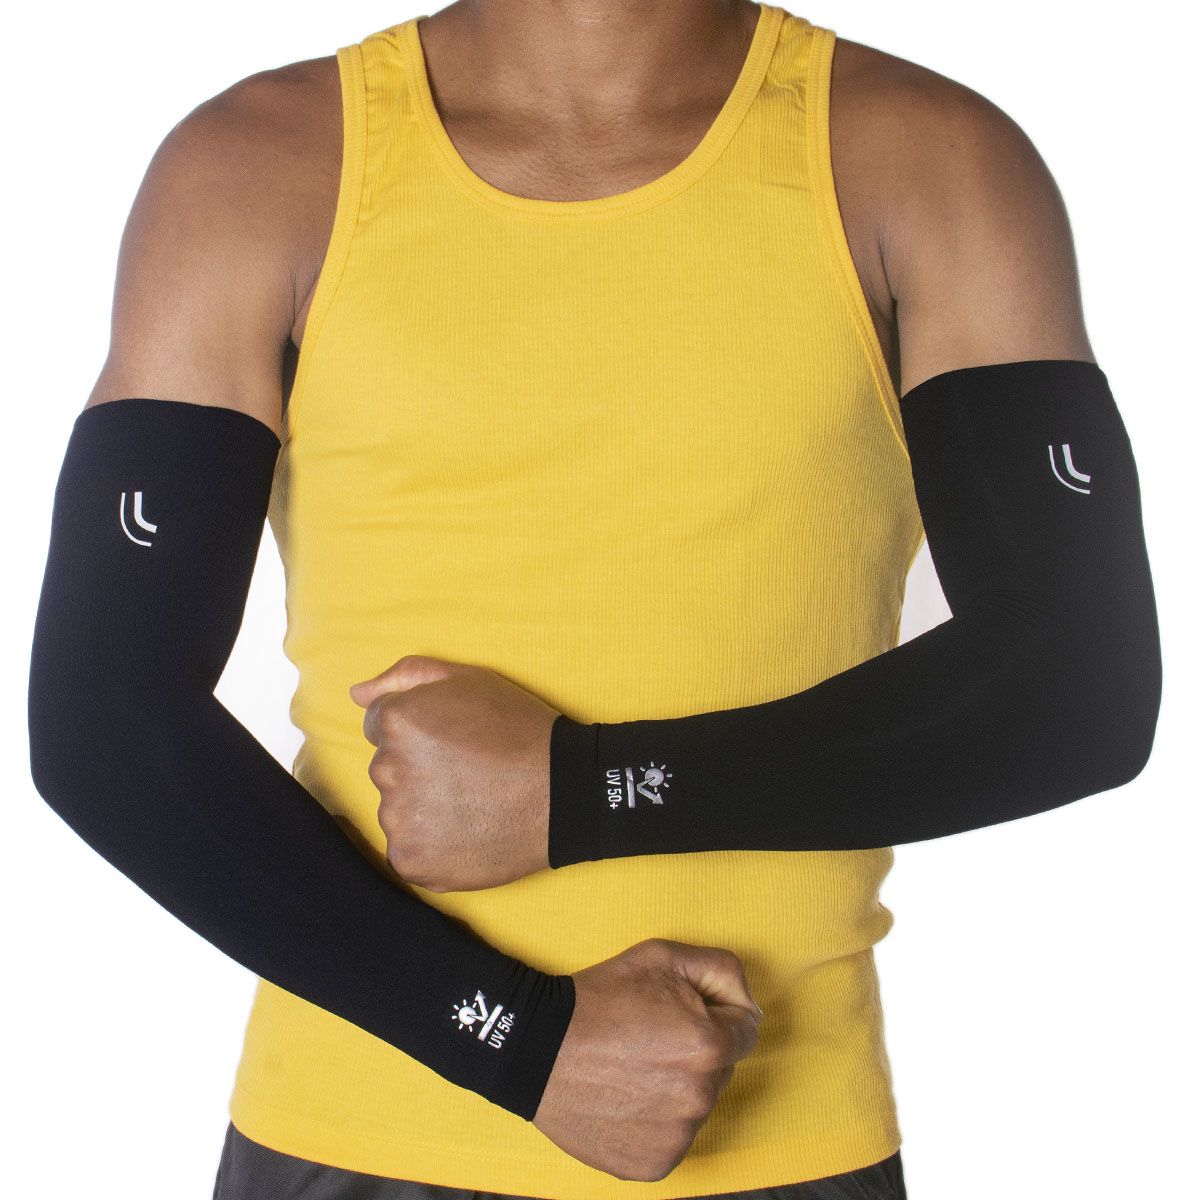 Manguito unissex Lupo proteção de braço para esportes Lupo